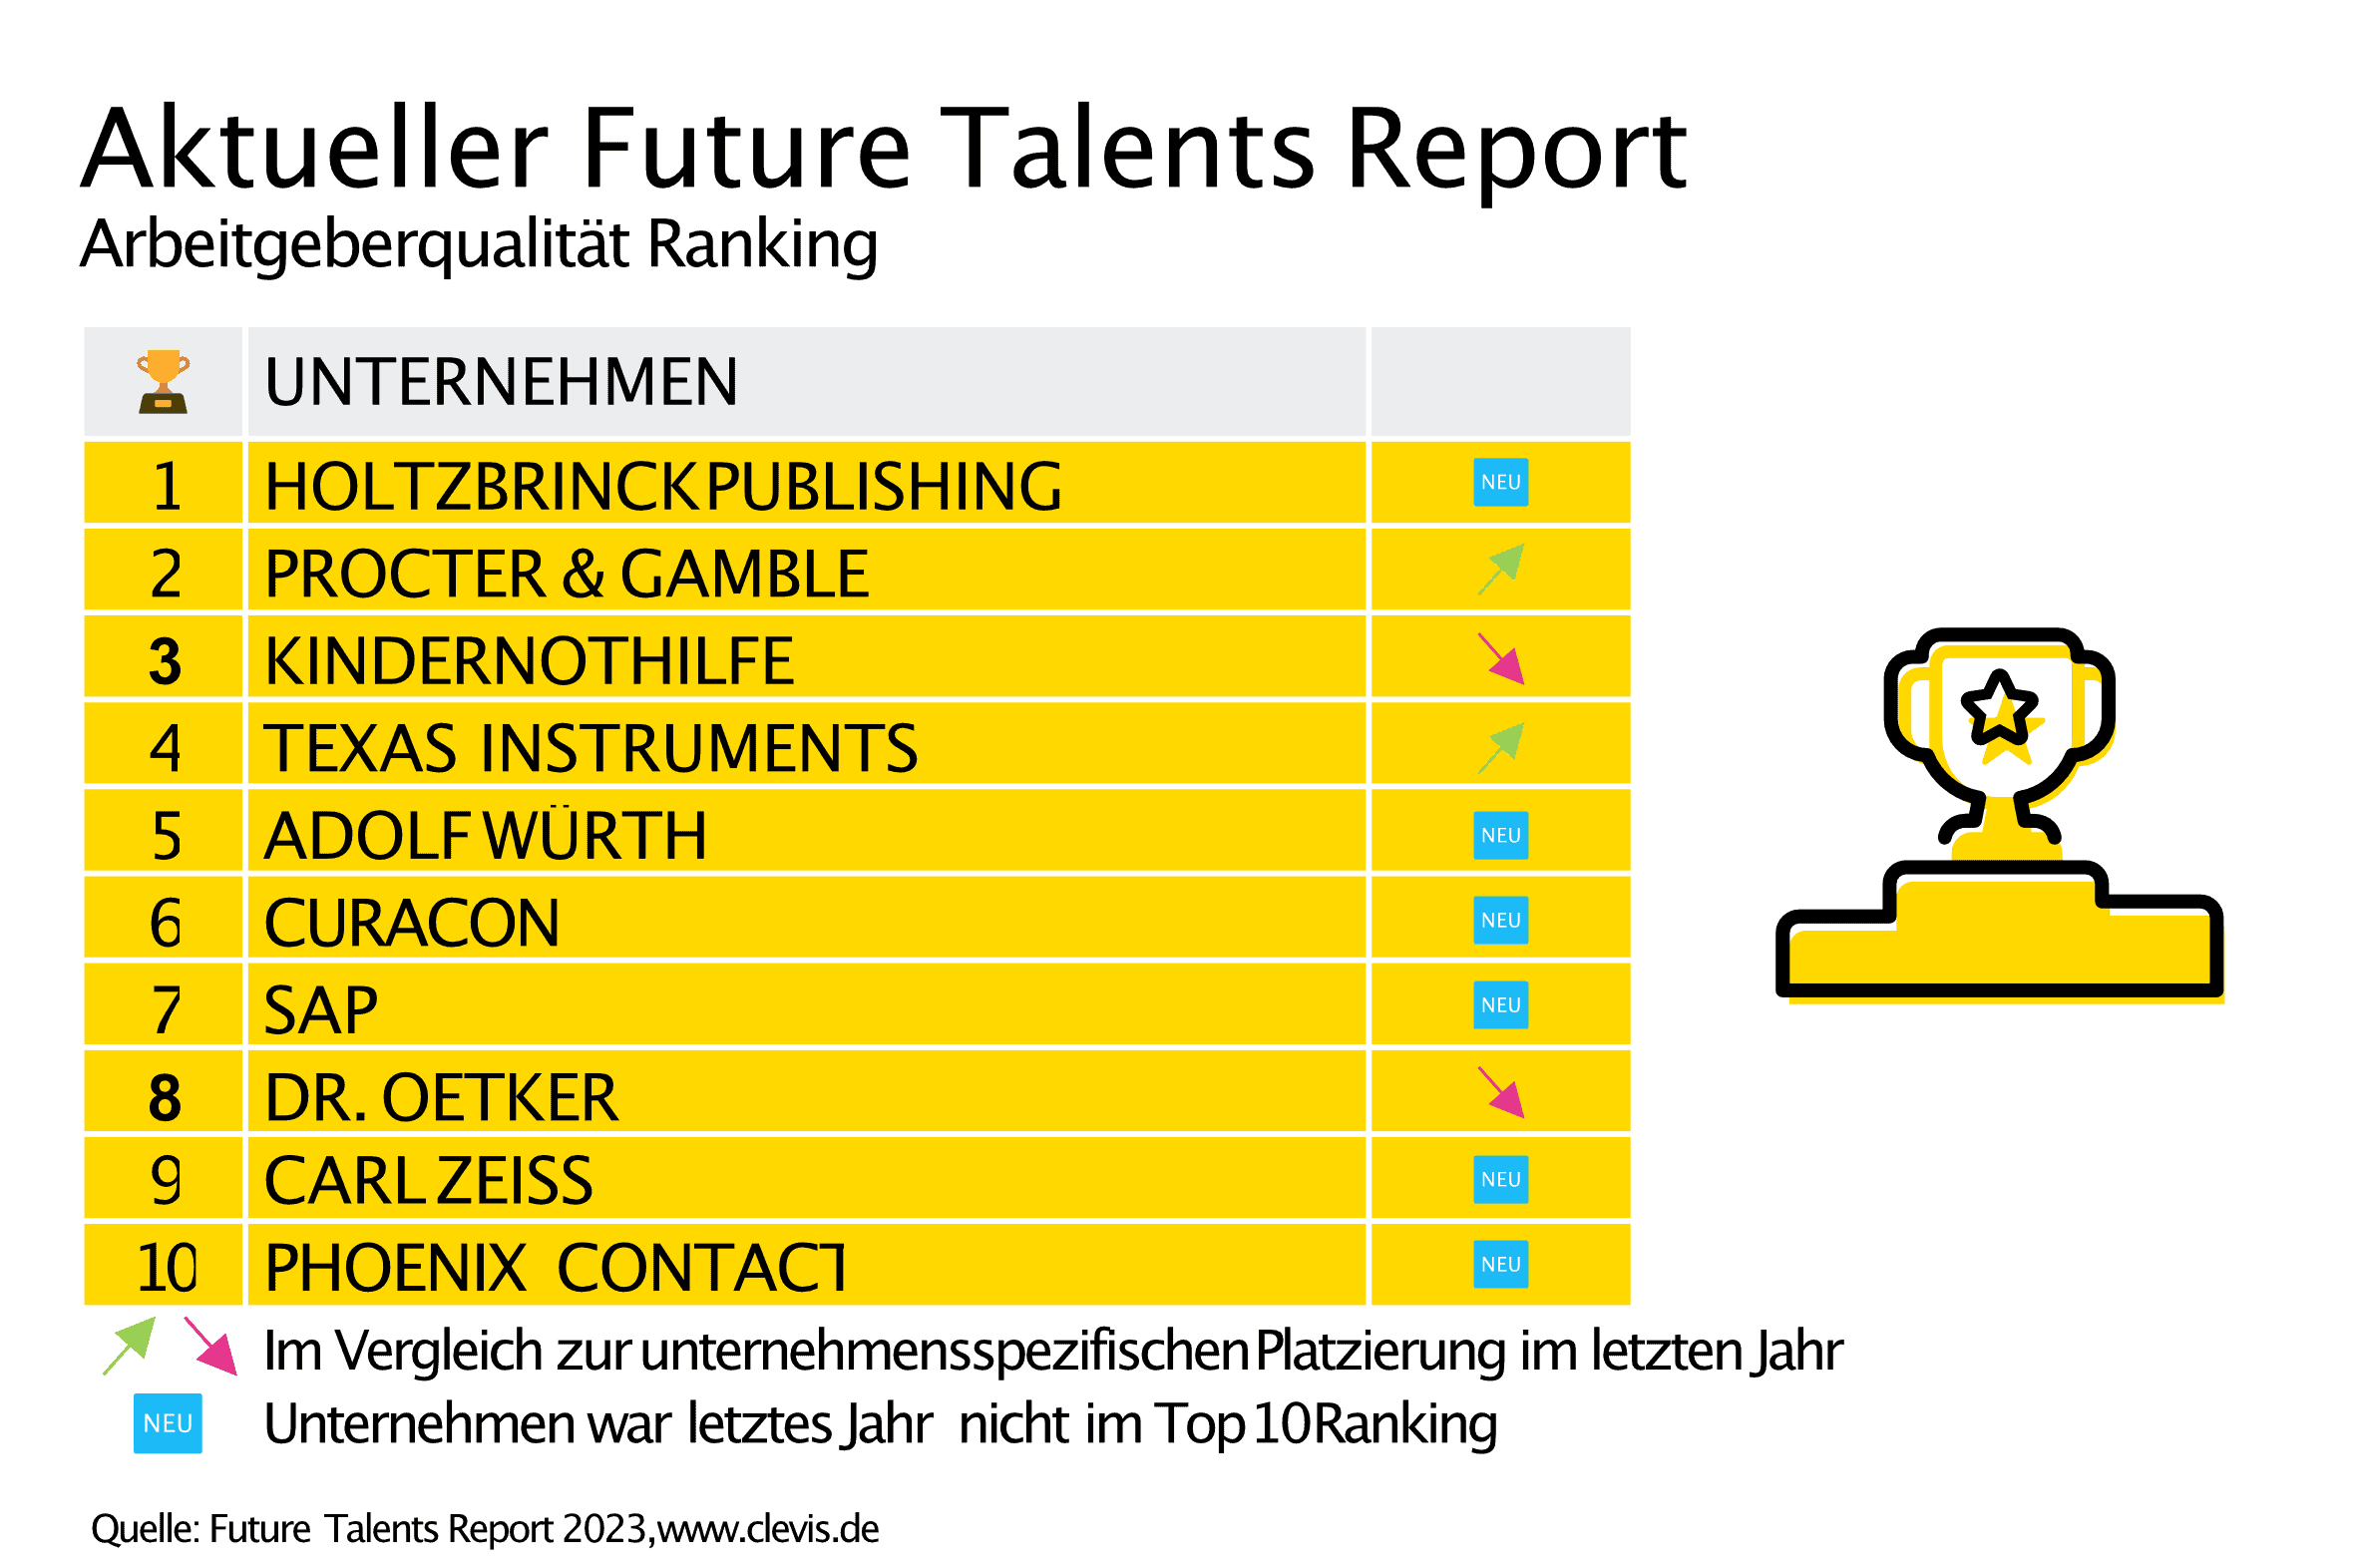 Top Ten Unternehmen Future Talents Report 2023